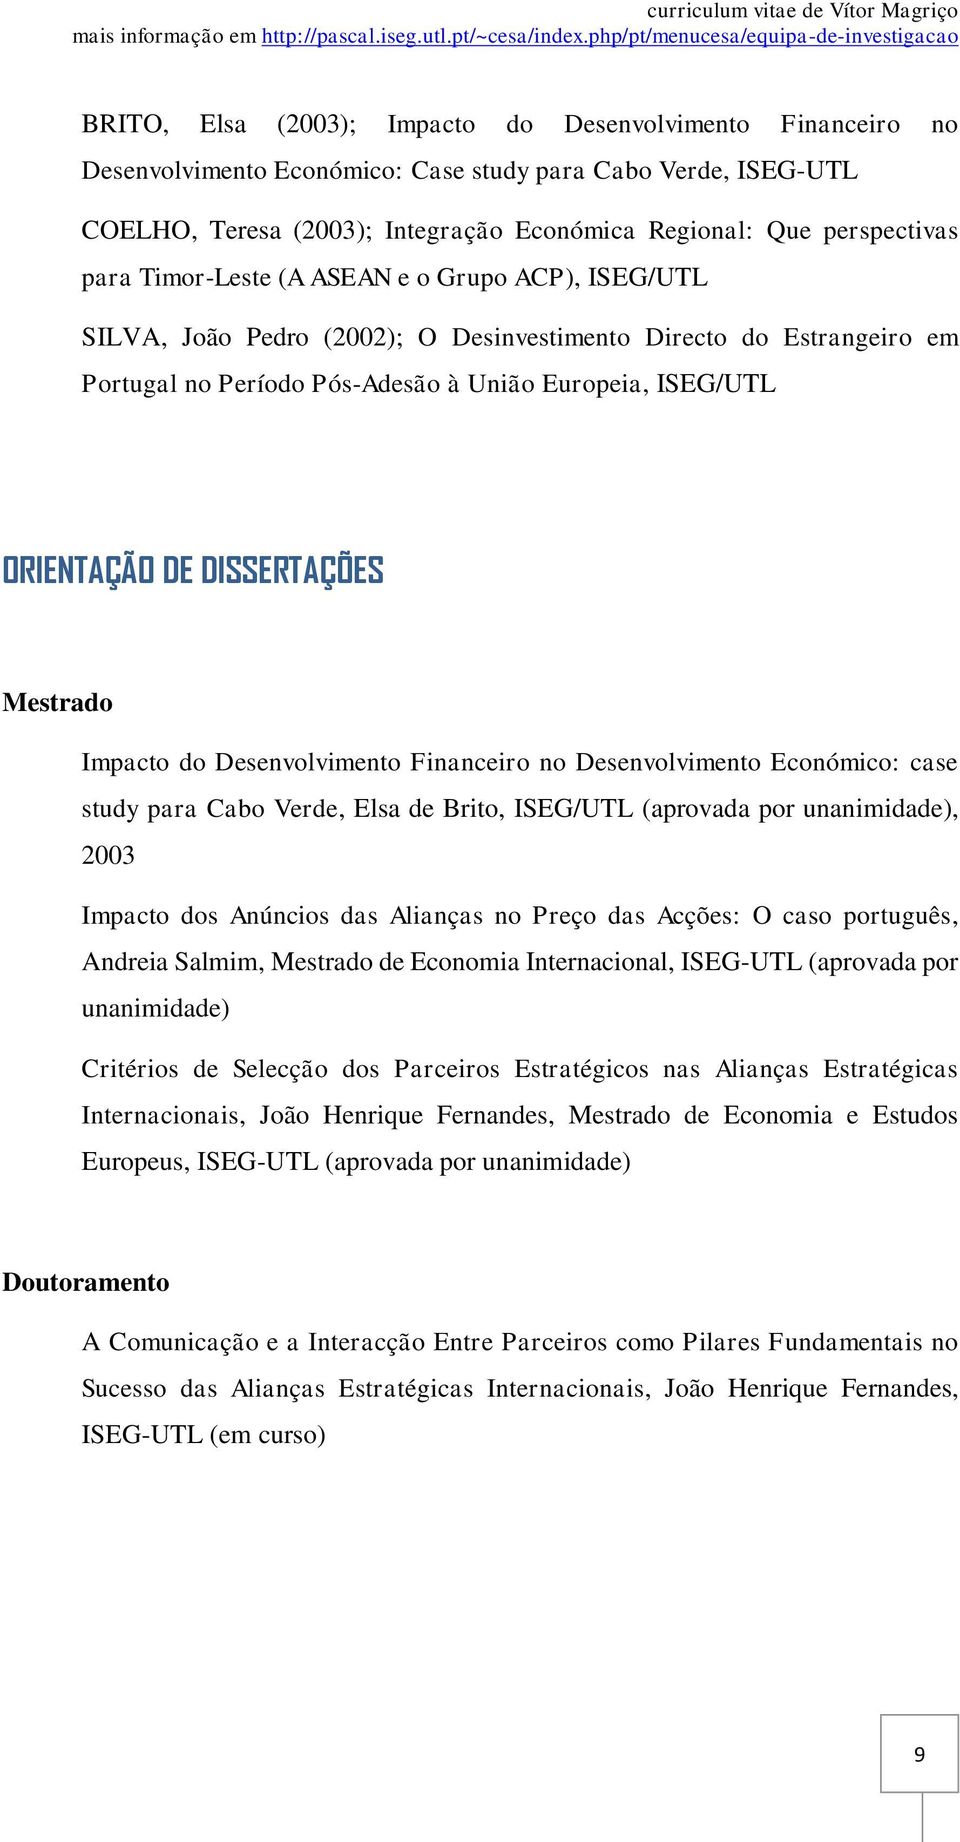 DISSERTAÇÕES Mestrado Impacto do Desenvolvimento Financeiro no Desenvolvimento Económico: case study para Cabo Verde, Elsa de Brito, ISEG/UTL (aprovada por unanimidade), 2003 Impacto dos Anúncios das